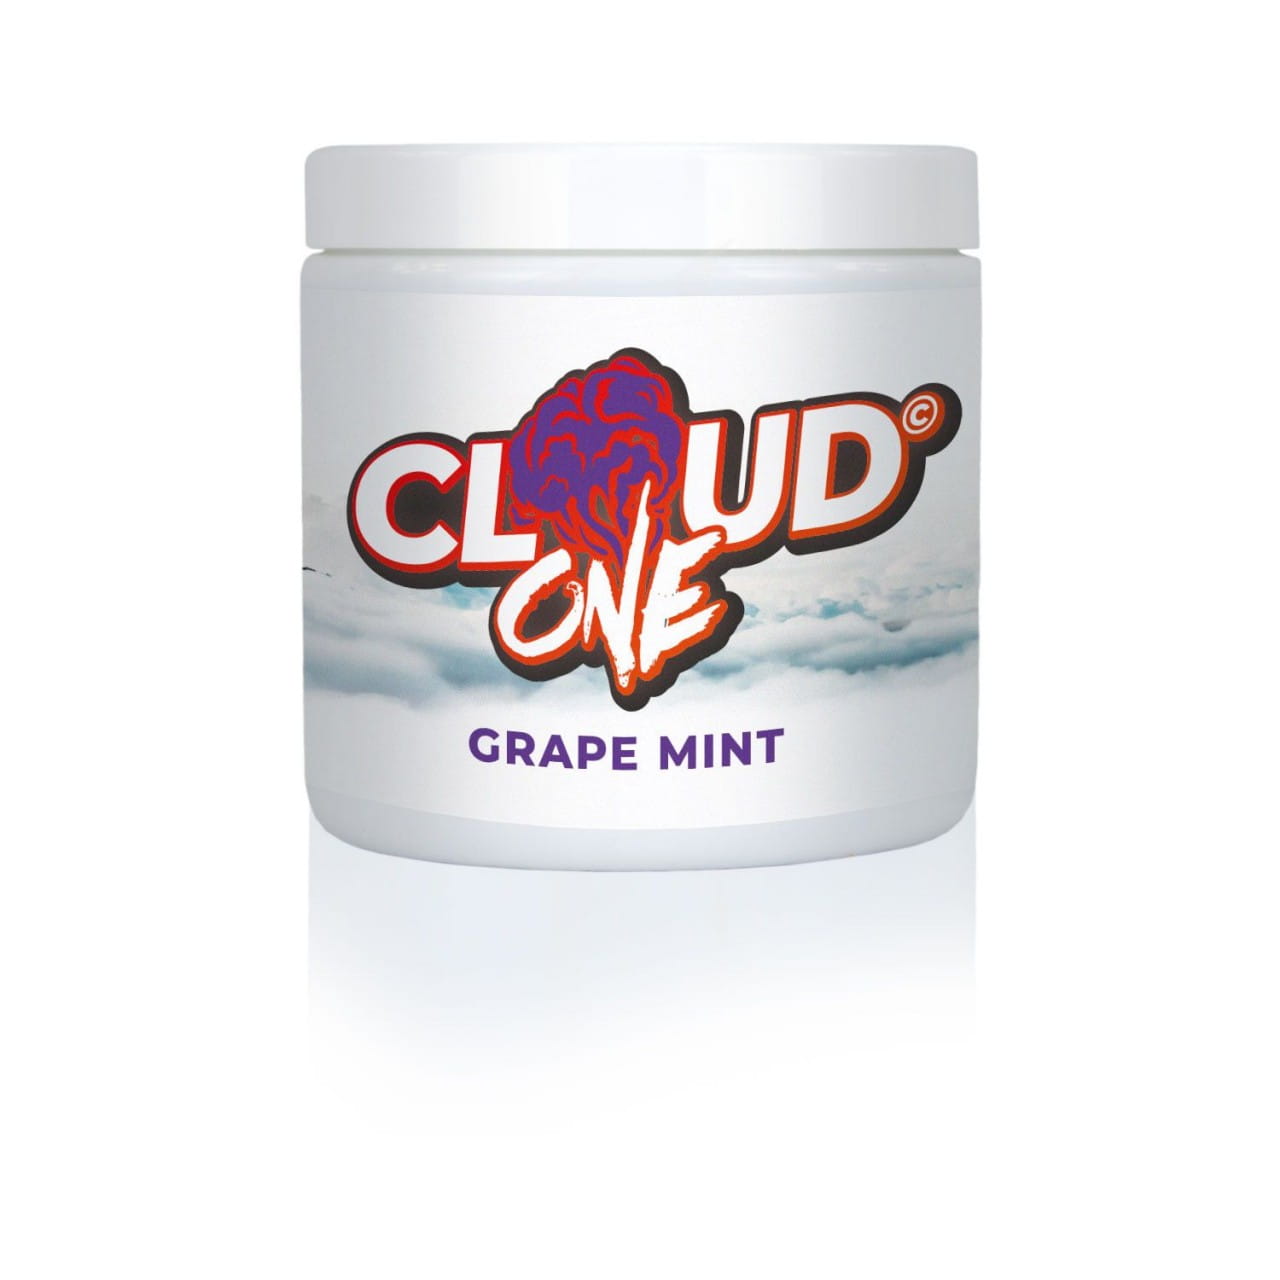 Cloud One - Grape Mint 200 g unter ohne Kategorie